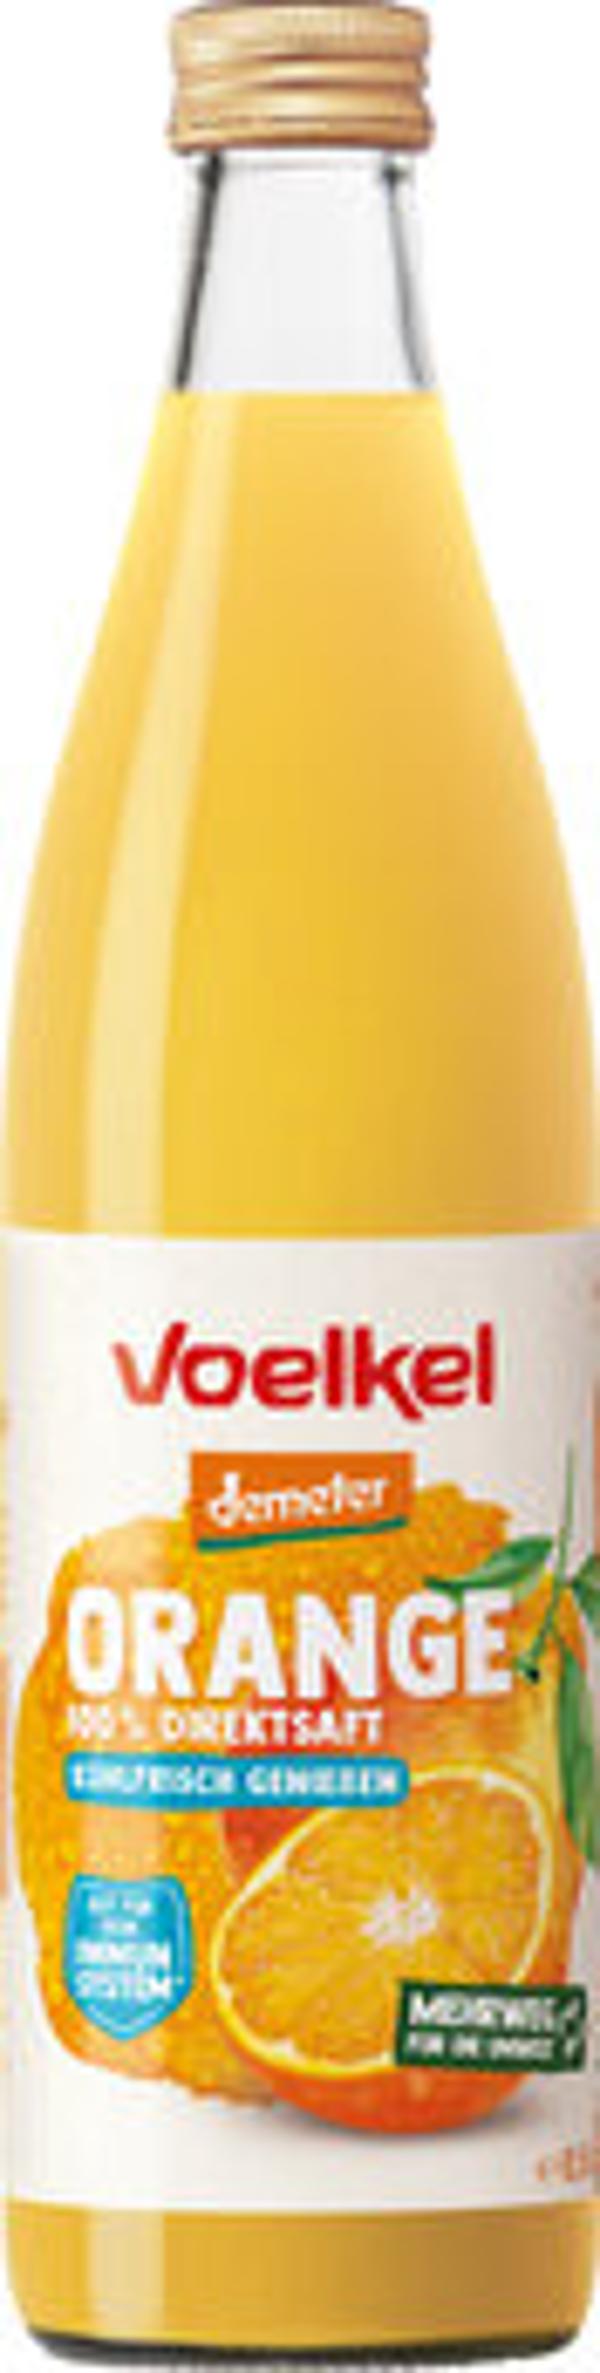 Produktfoto zu Voelkel Frischer Orangensaft 0,5l